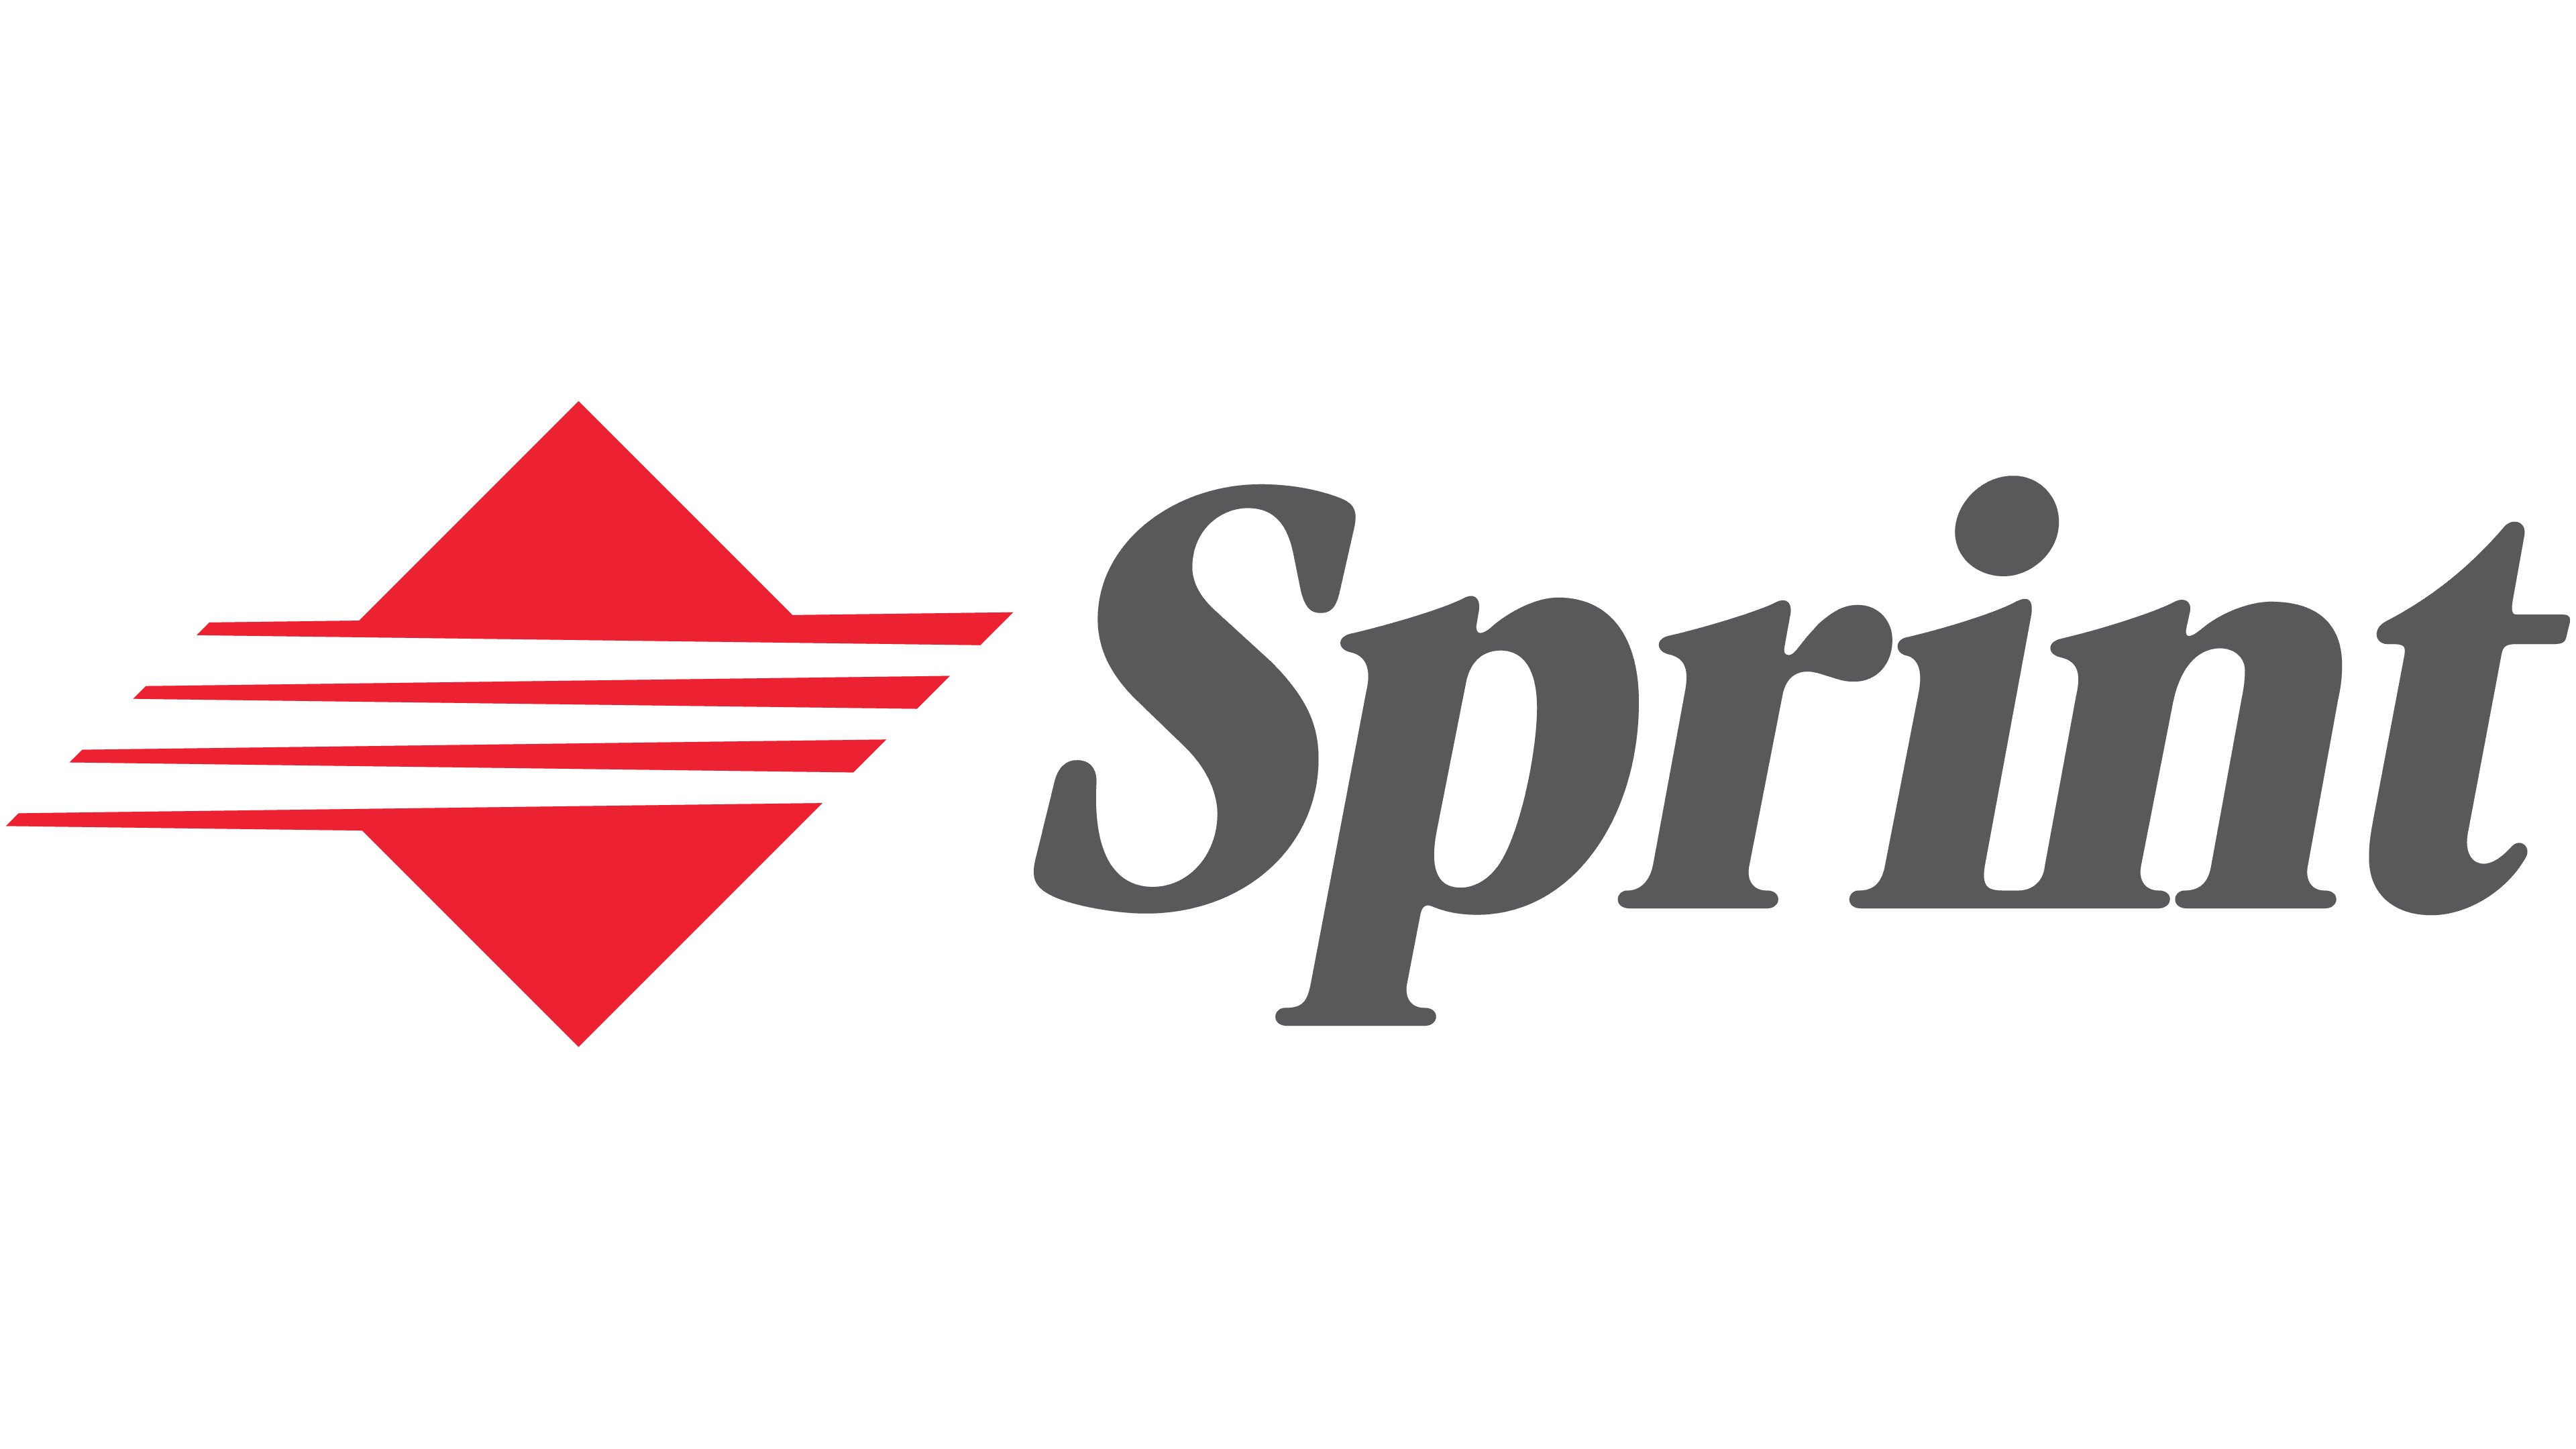 sprint nextel logo